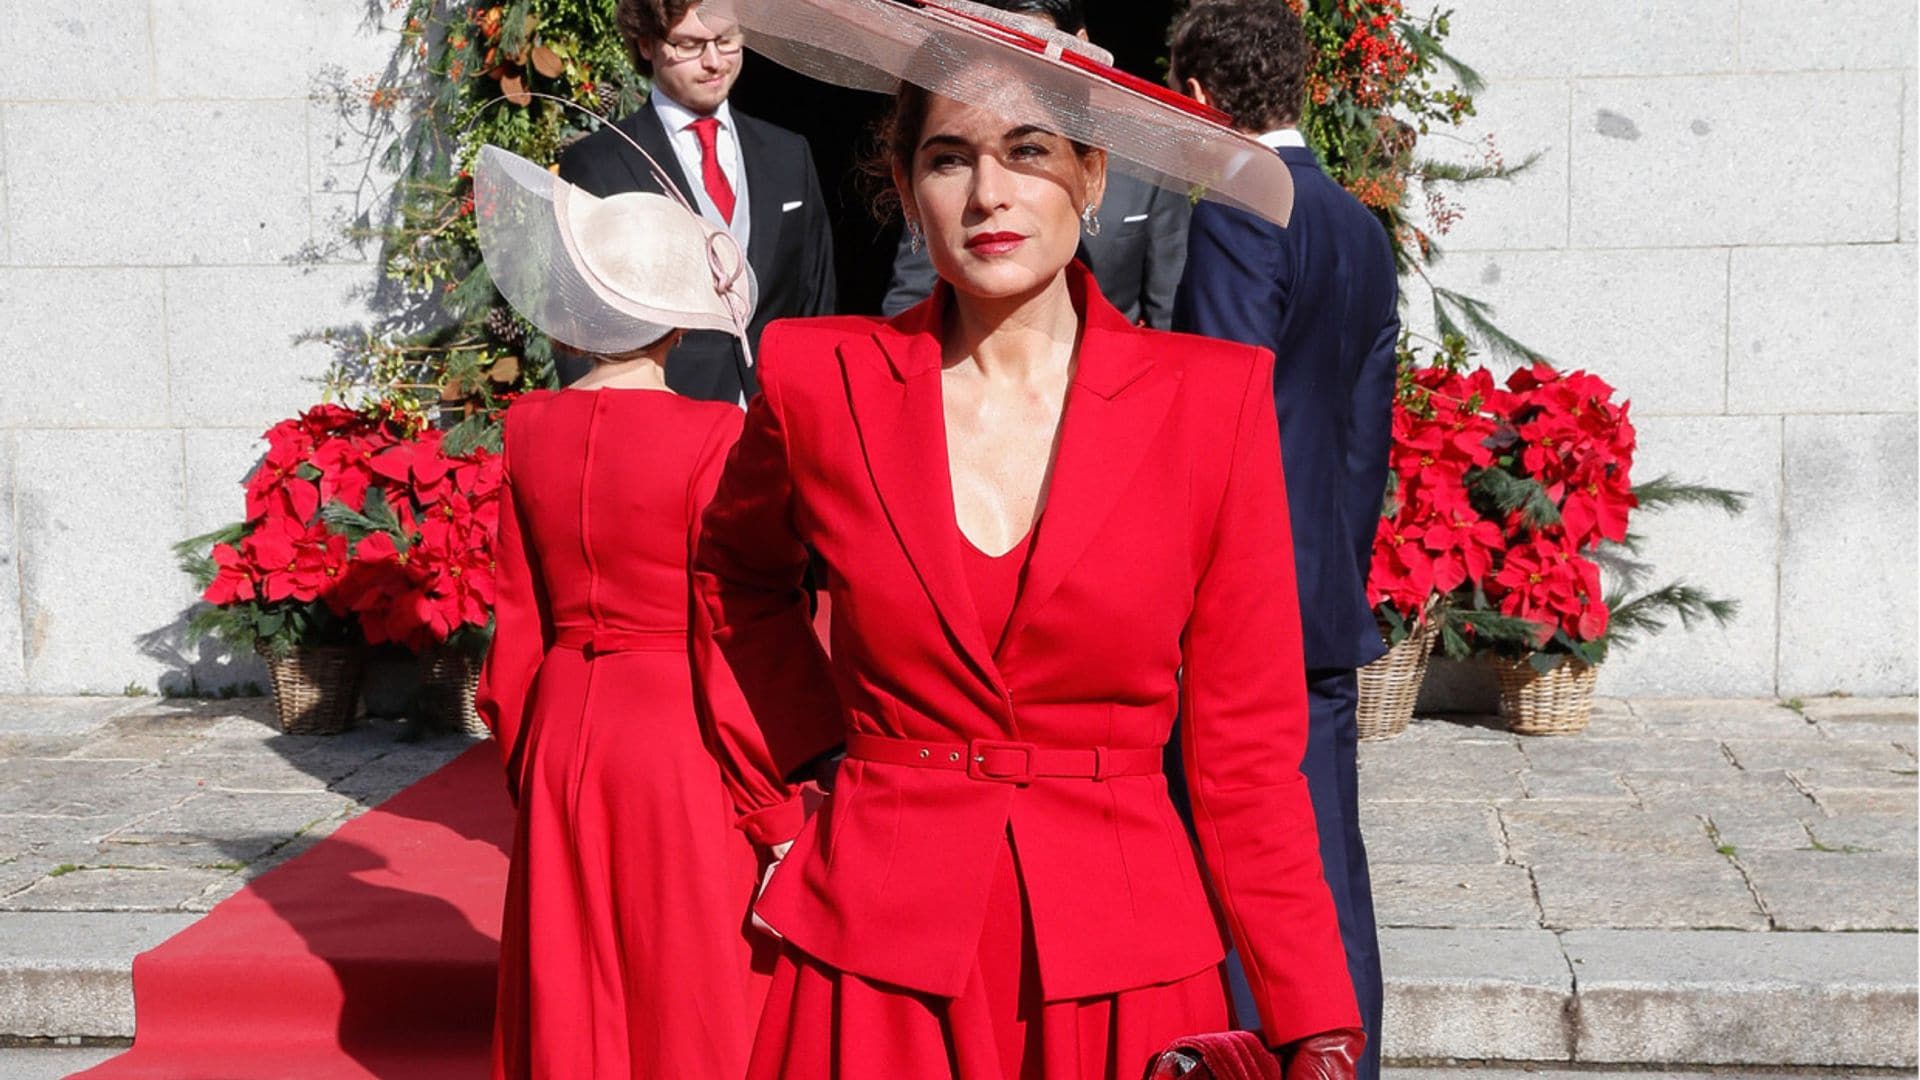 Lourdes Montes y Margarita Vargas coordinan sus looks de invitada con vestidos rojos y maxitocados